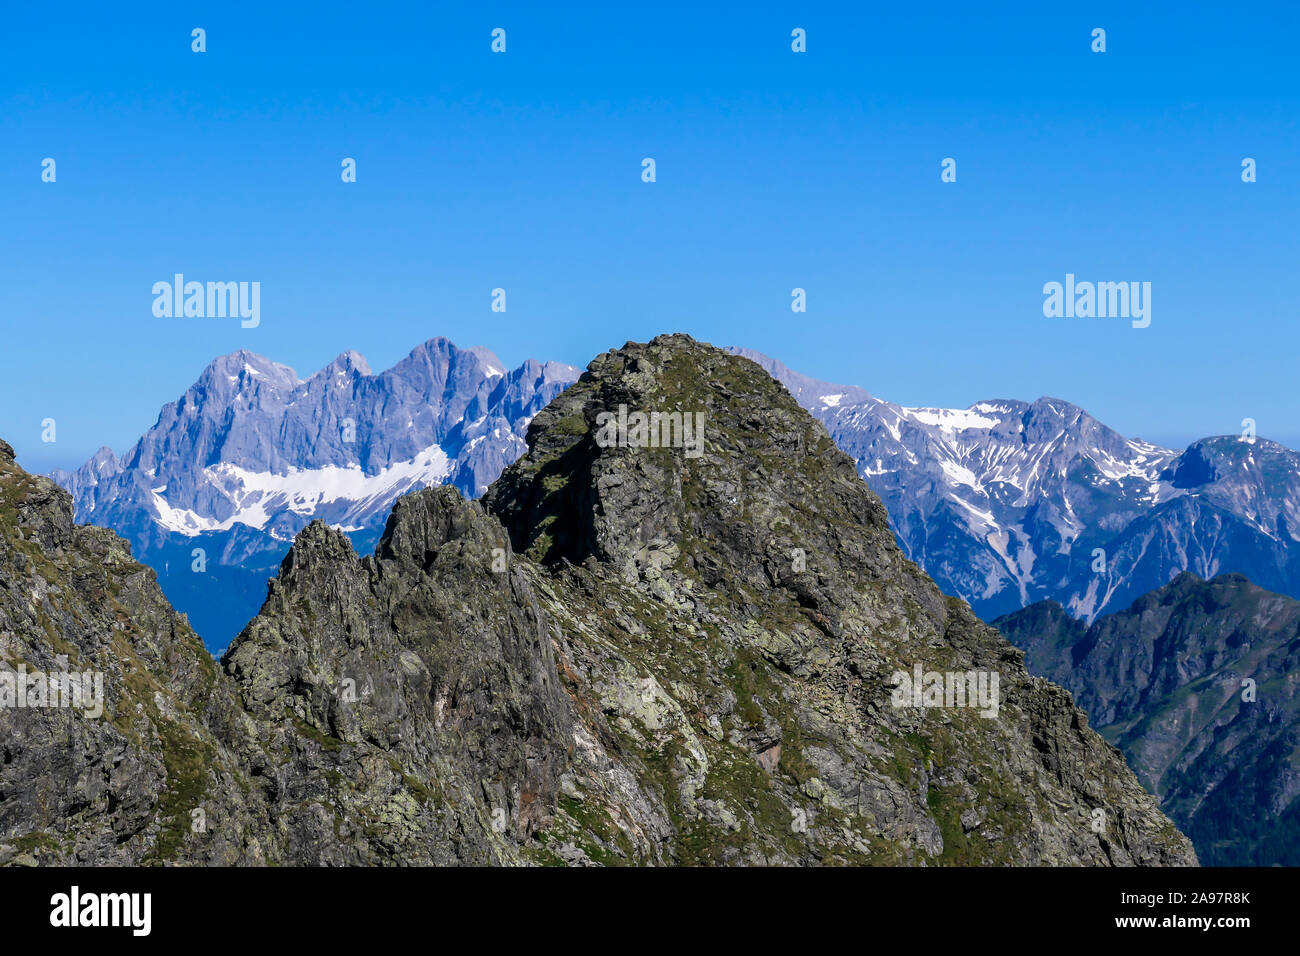 Massive, scharfe Stony Mountain Range von Schladming Alpen, Österreich. Der Berg hat eine Pyramide Form, es ist teilweise mit grünen Büschen überwachsen. Gefahr Stockfoto